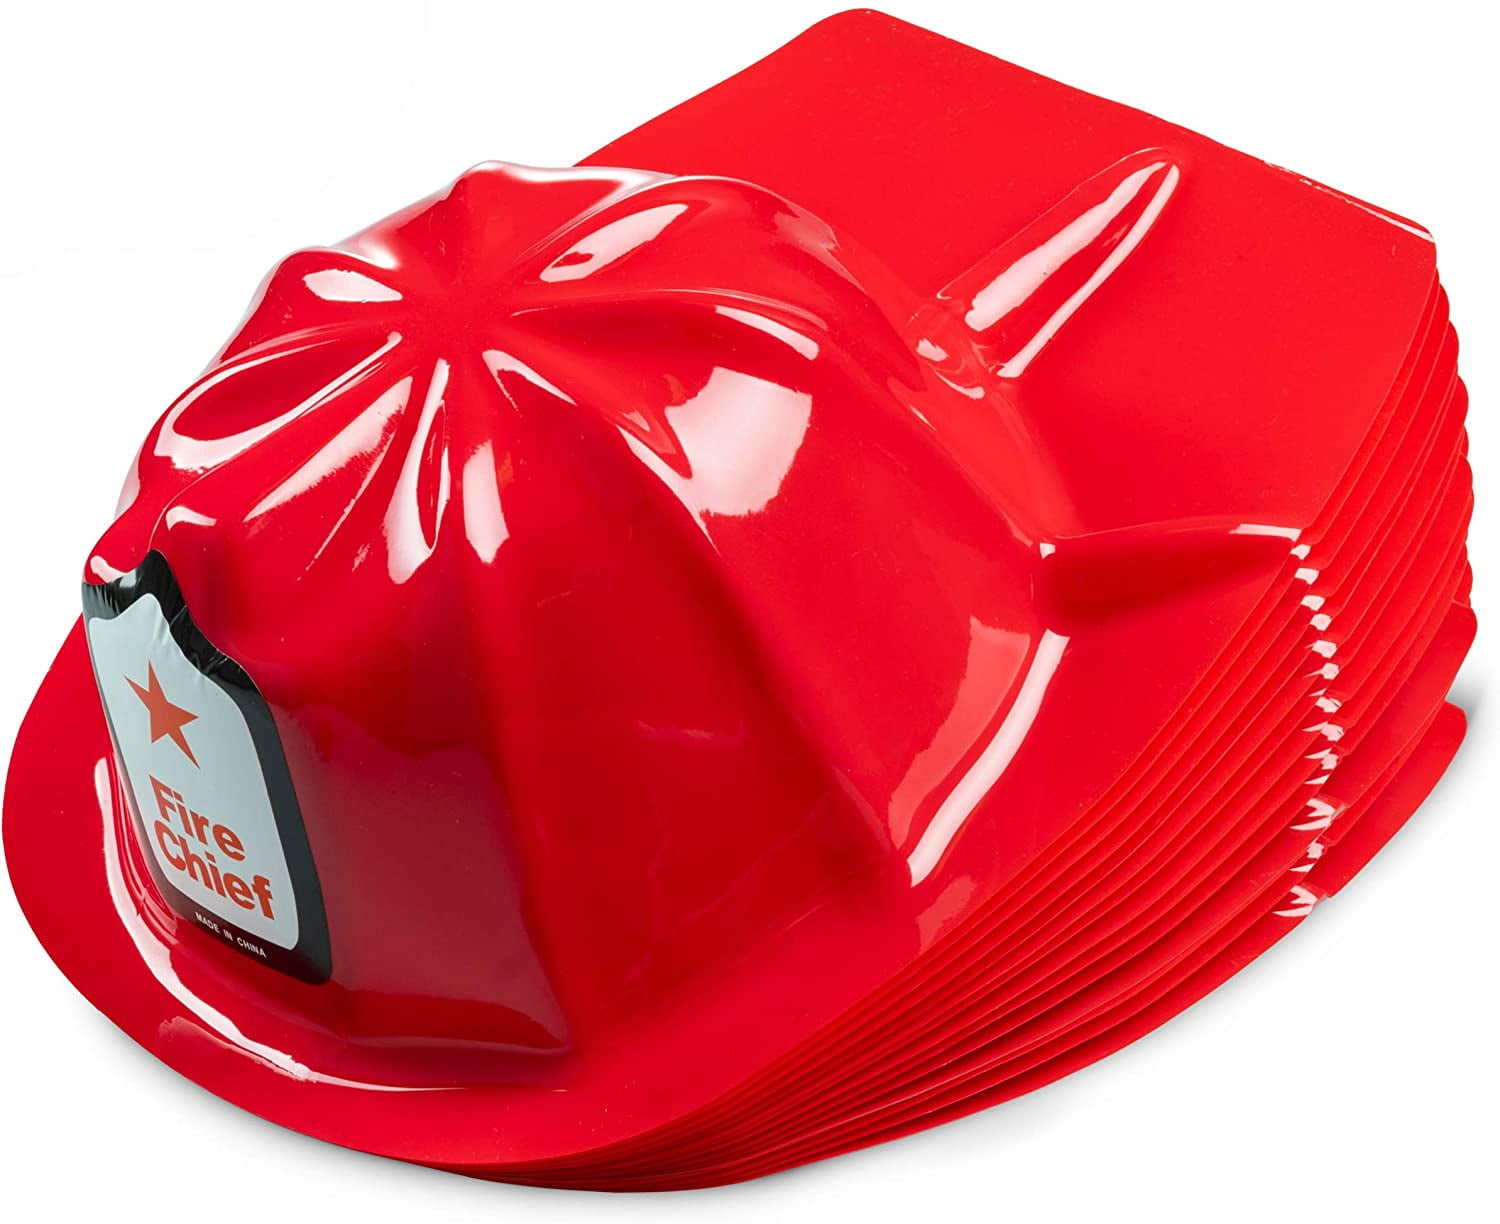 2x Firefighter Children's Fireman Soft Plastic Helmet Dress Up Party Hats 